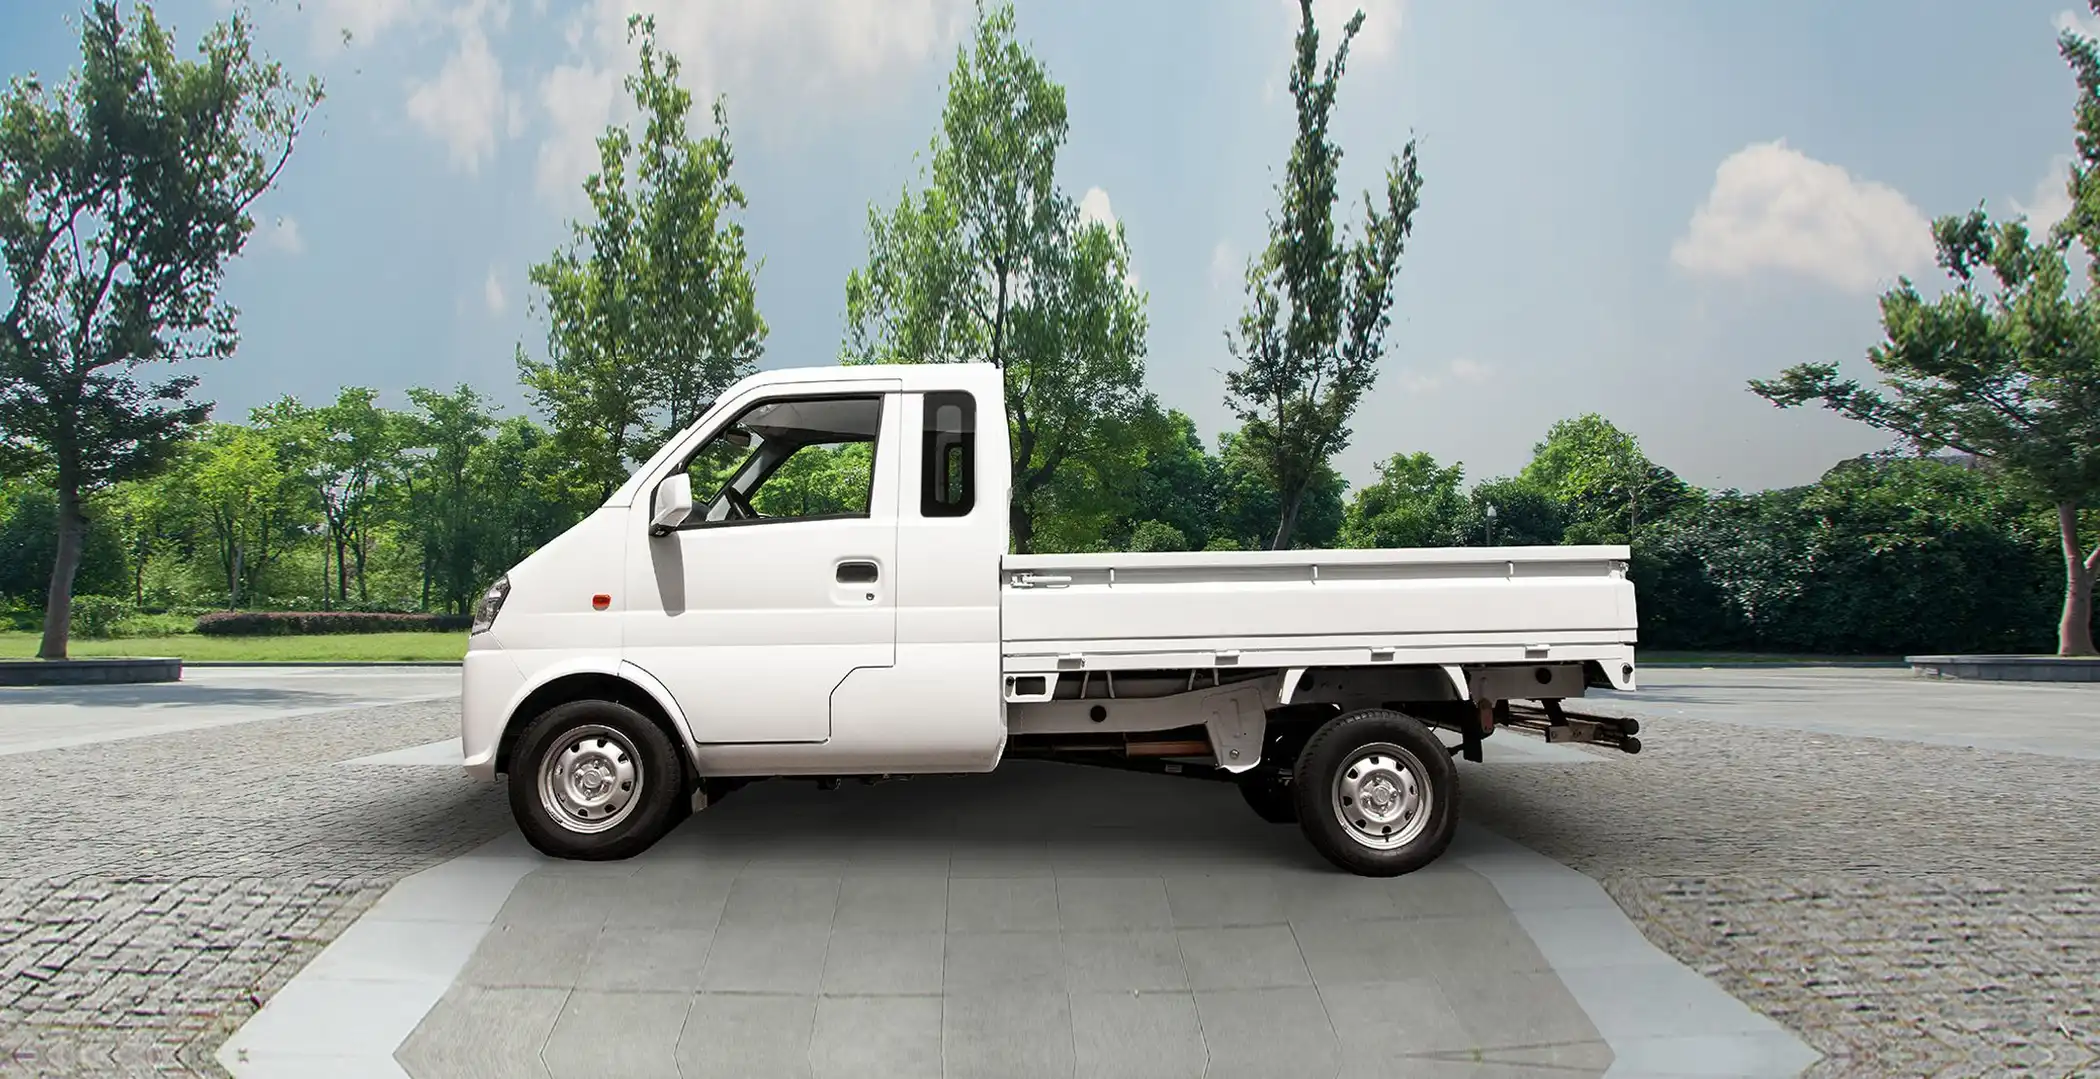 Mini camioneta económica DFSK K01, ideal para el reparto y delivery urbano